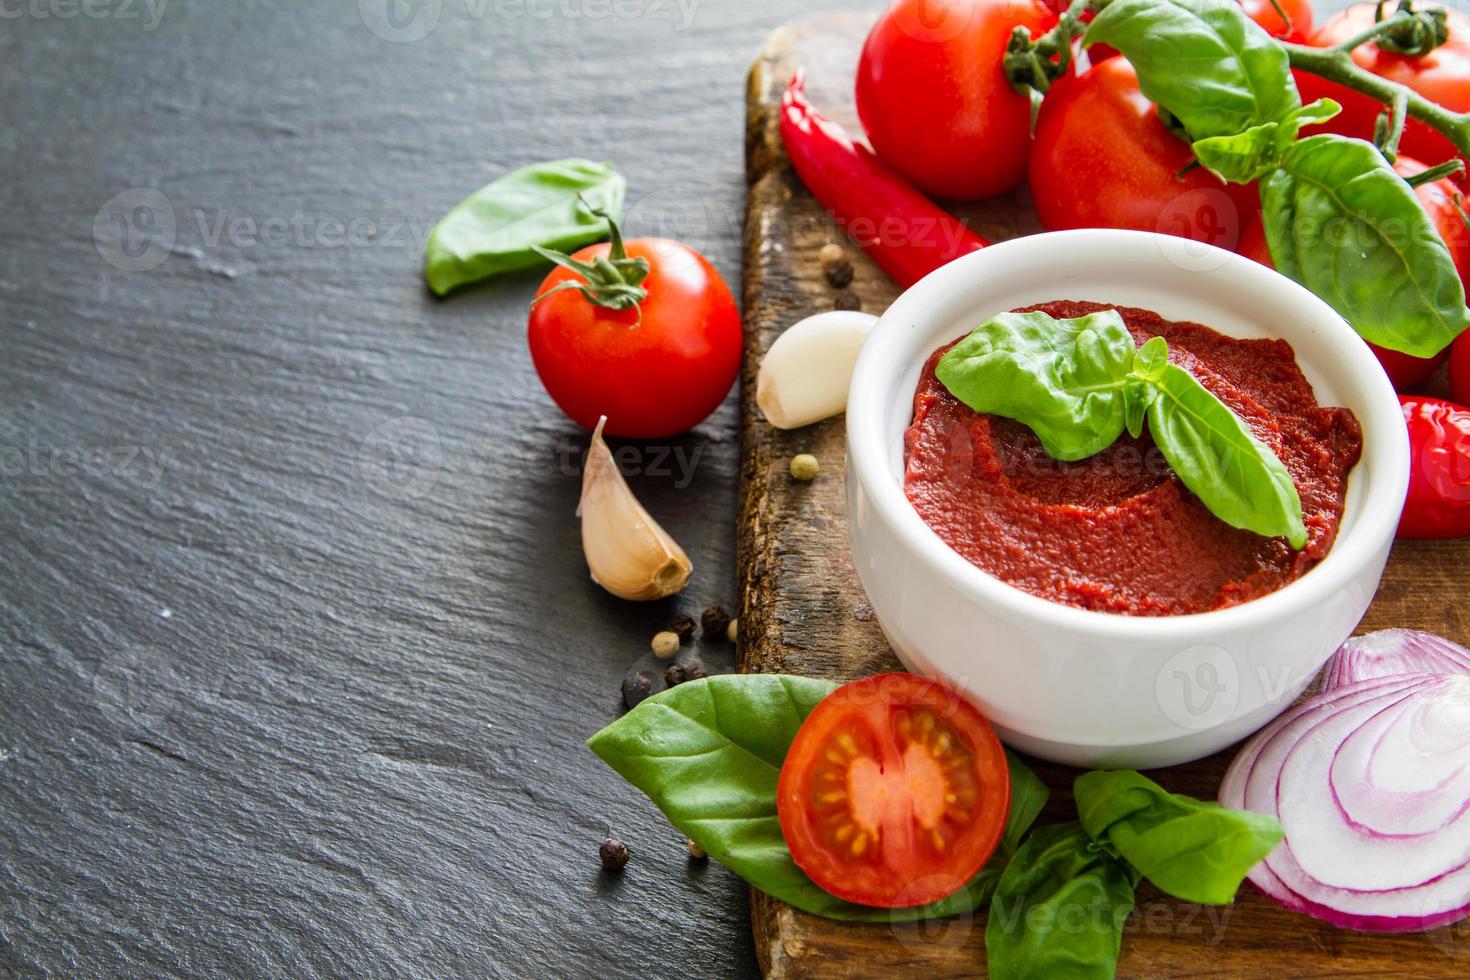 ingrédients de la sauce tomate - tomates cerises, basilic, oignon, ail, poivre photo